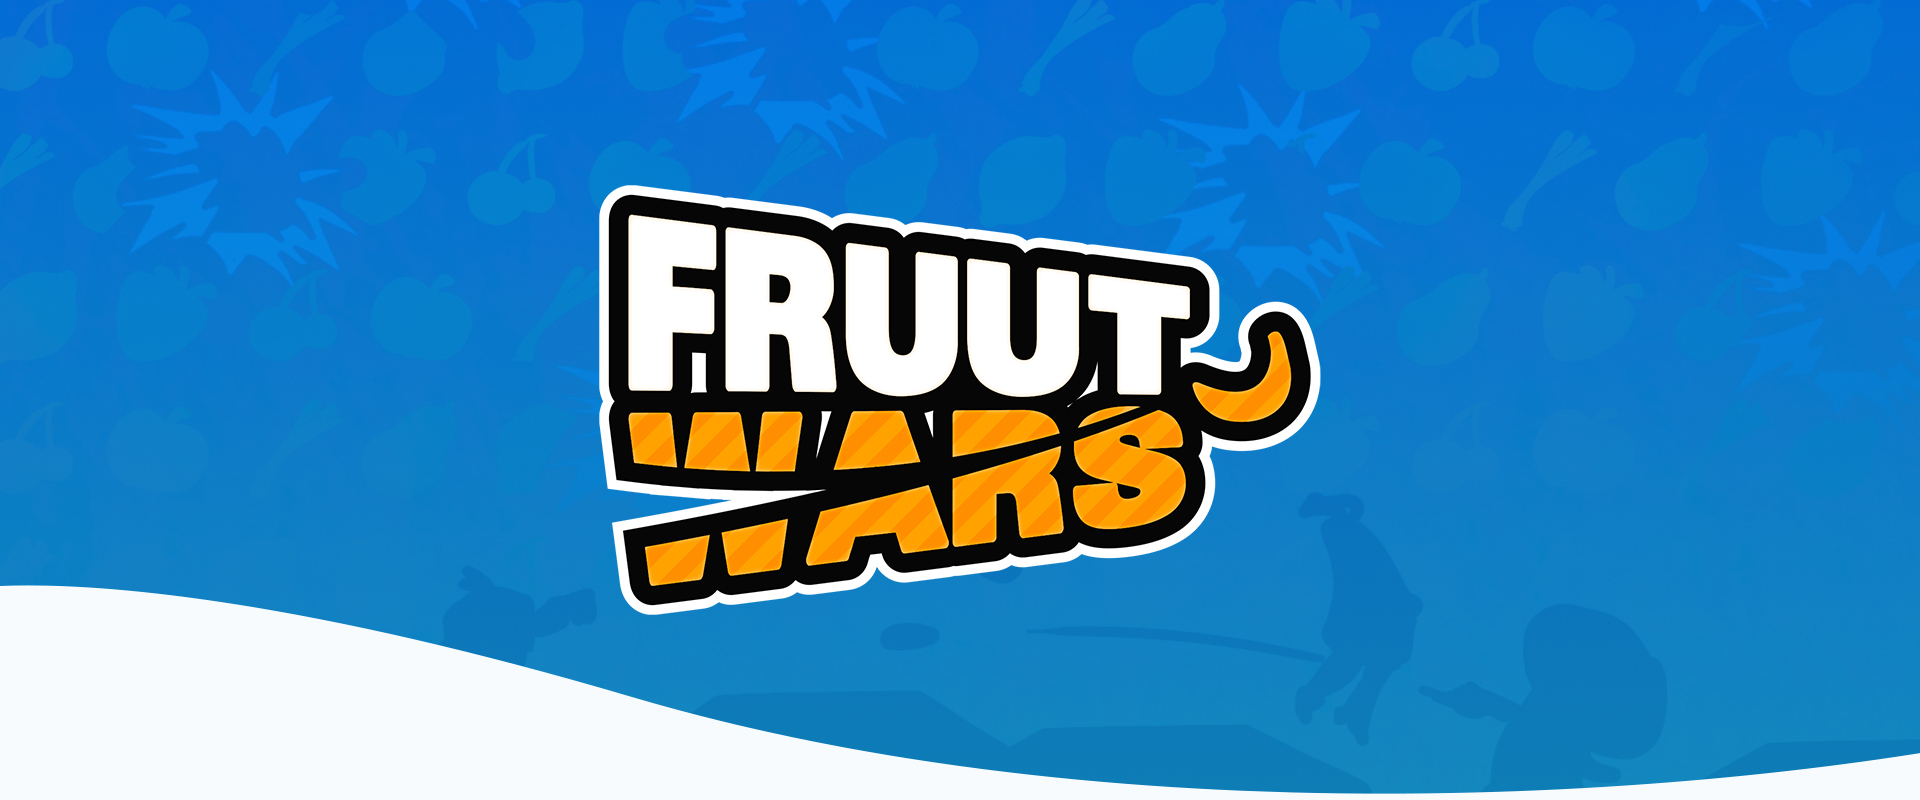 [Group02] Fruut Wars